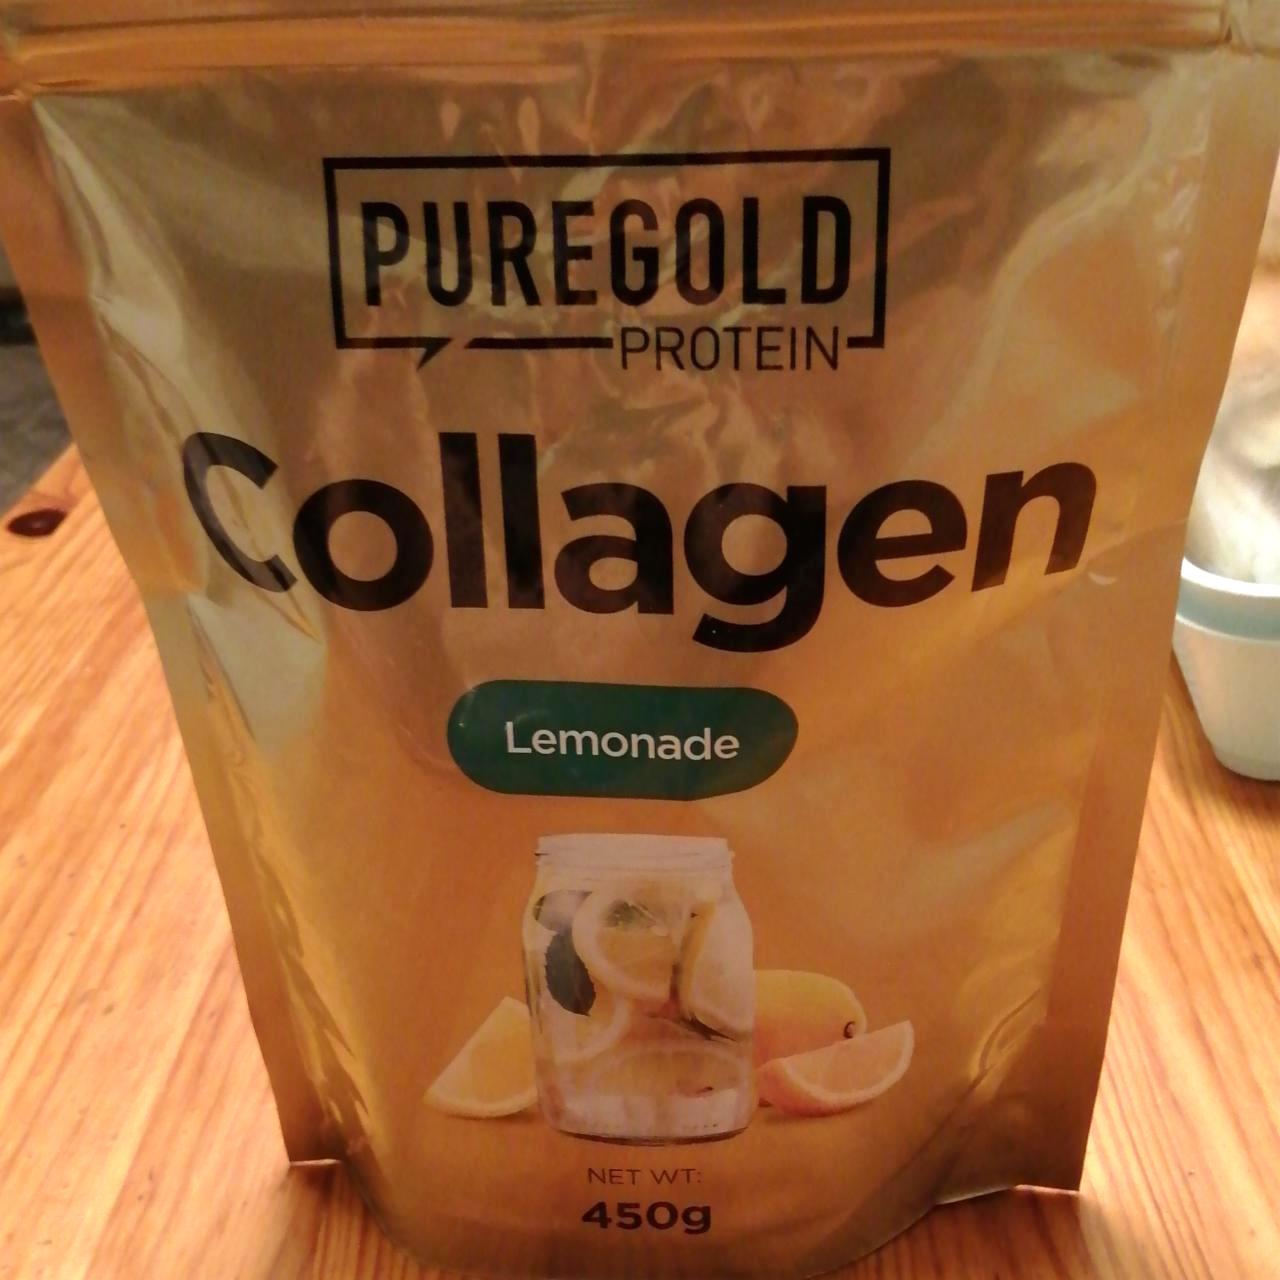 Képek - Collagen lemonade íz Pure gold